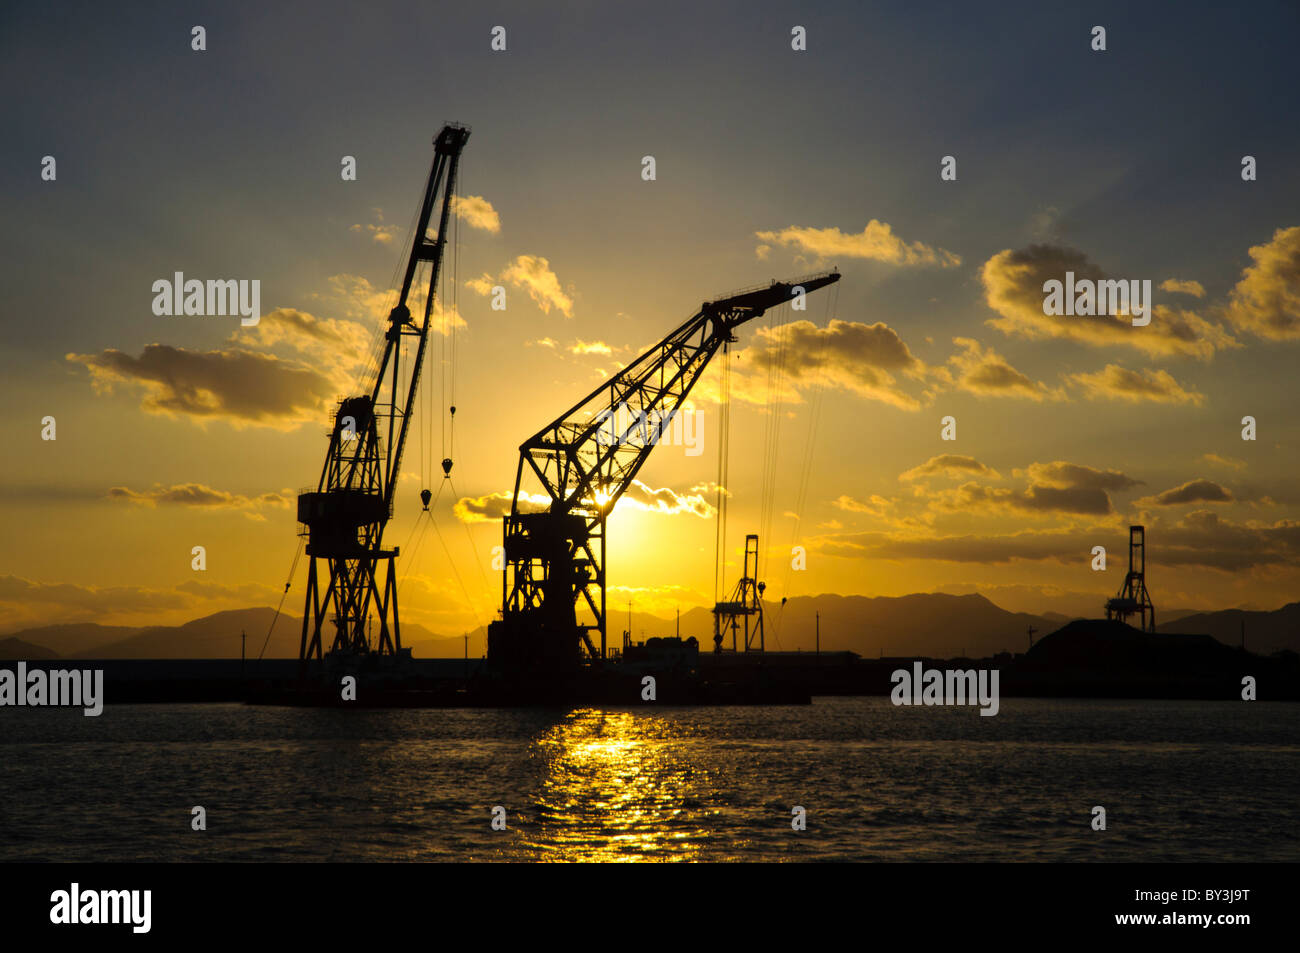 Vue du coucher de soleil (paysage / seascape) de grues derrick sur les quais à un port industriel en Asie Banque D'Images